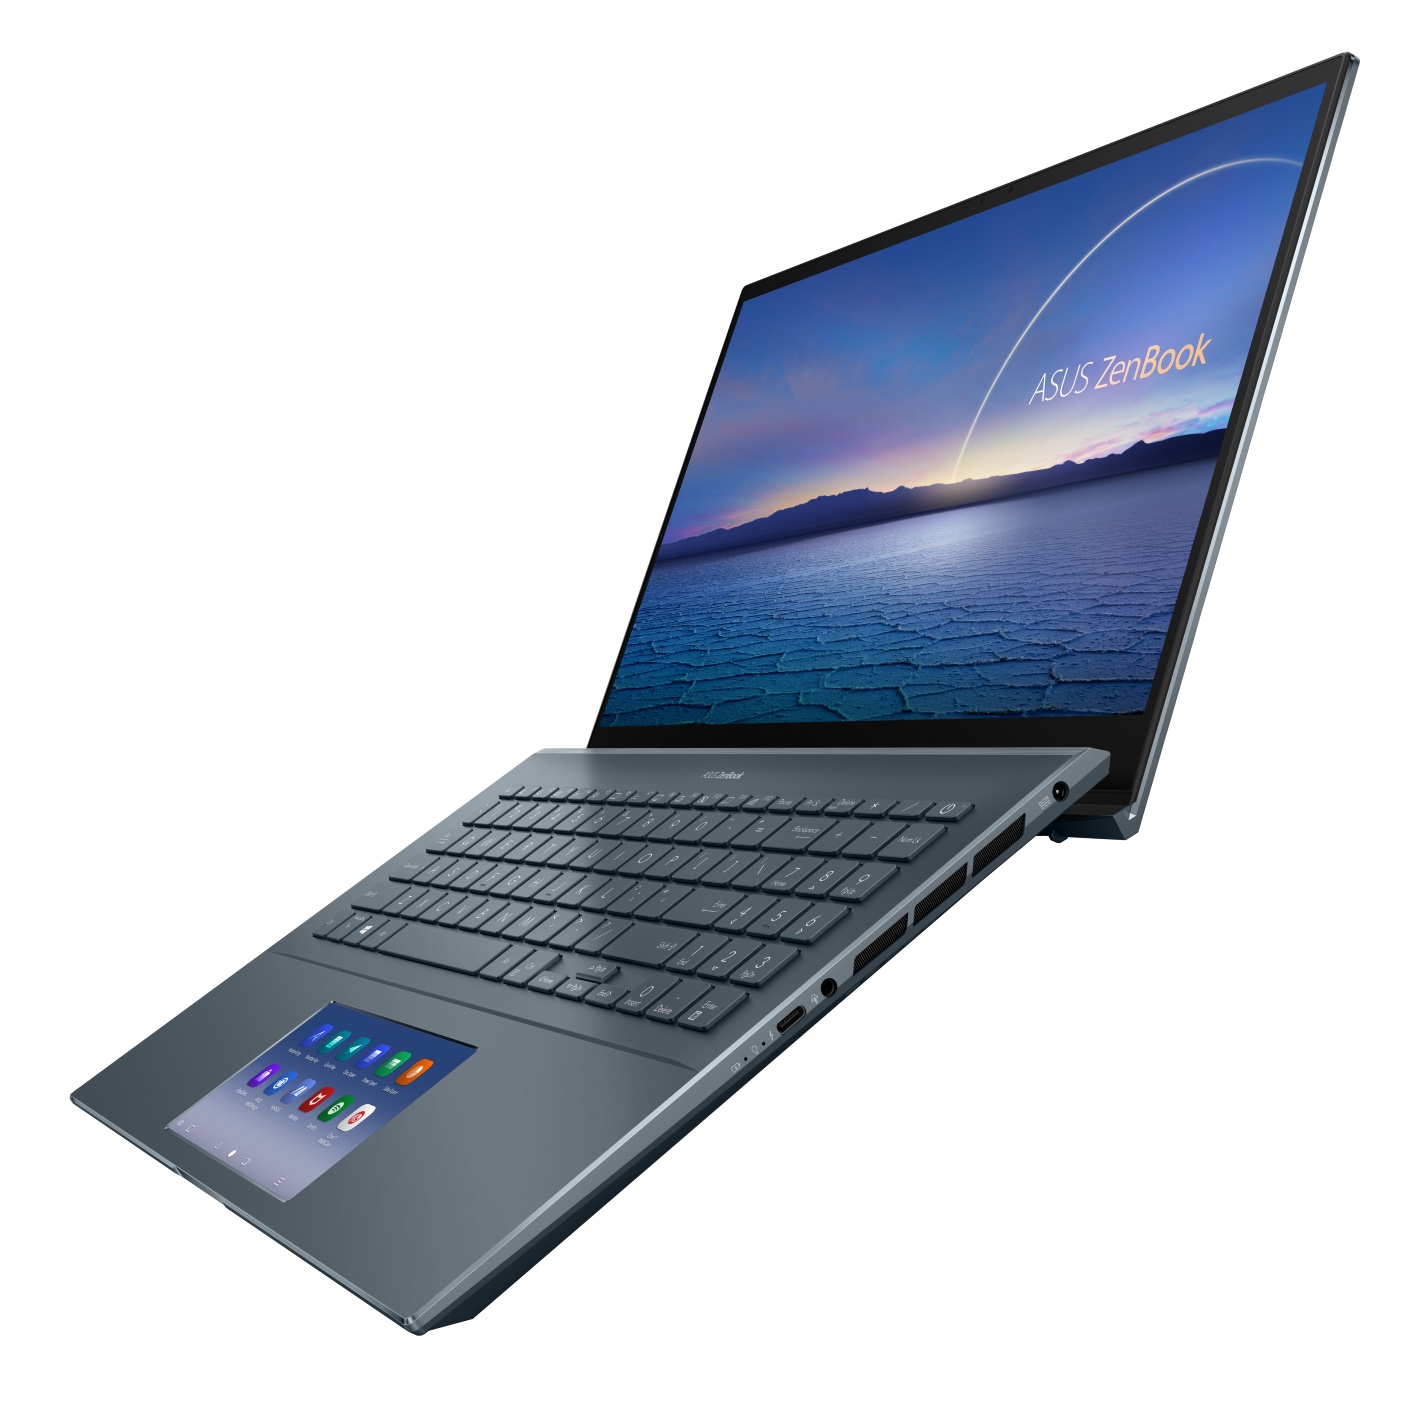 ZenBook Pro 15 open and facing left